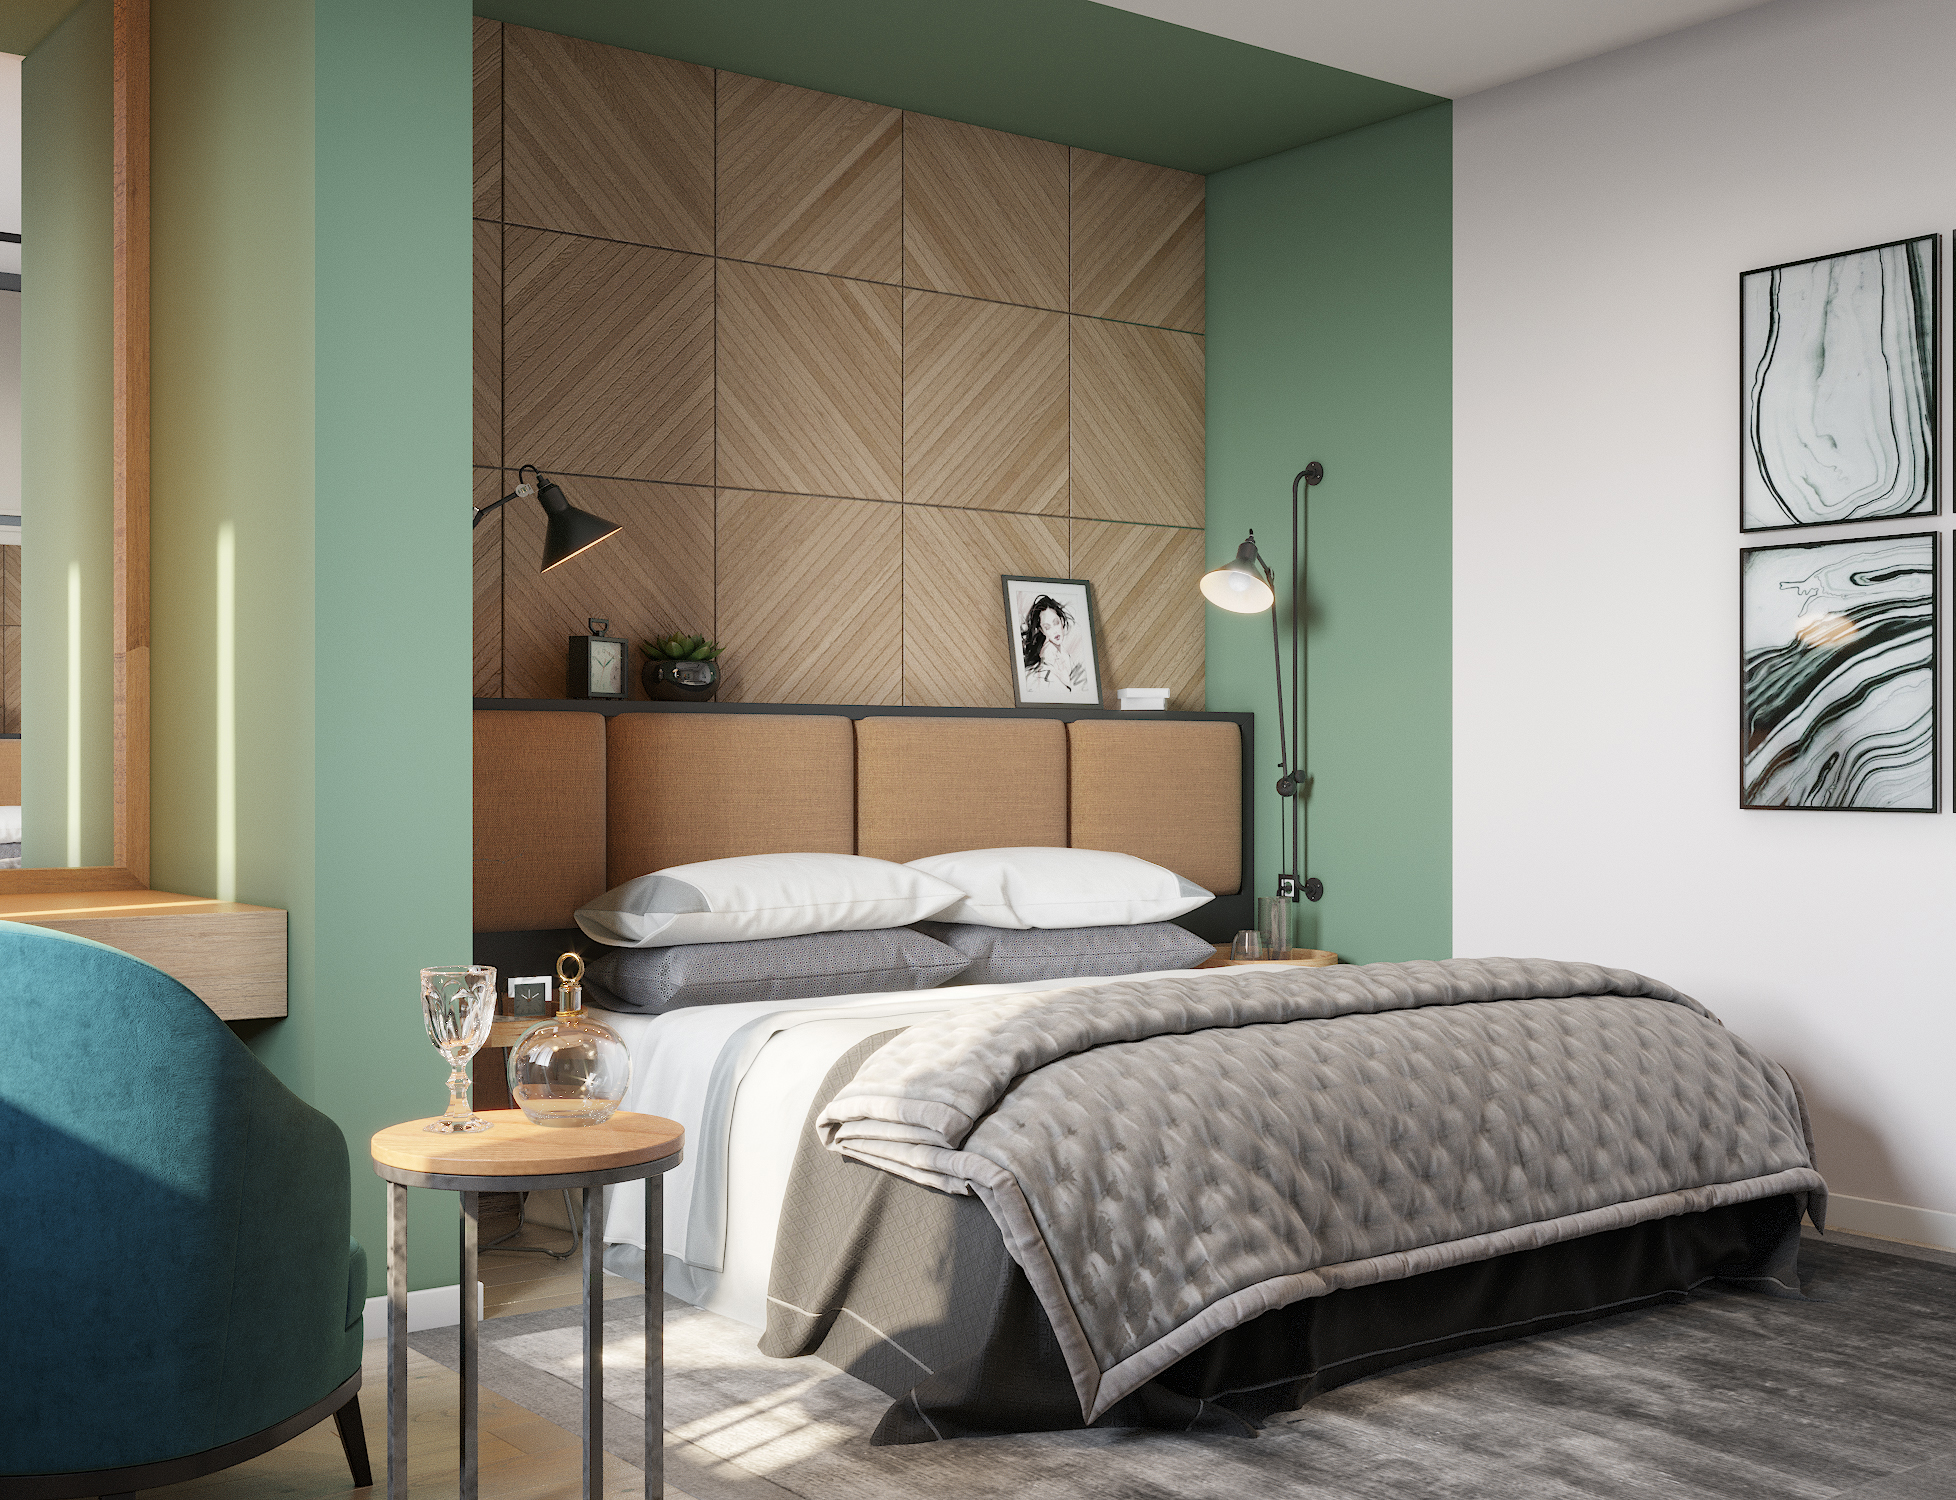 Bedroom in emerald tones in 3d max corona render image